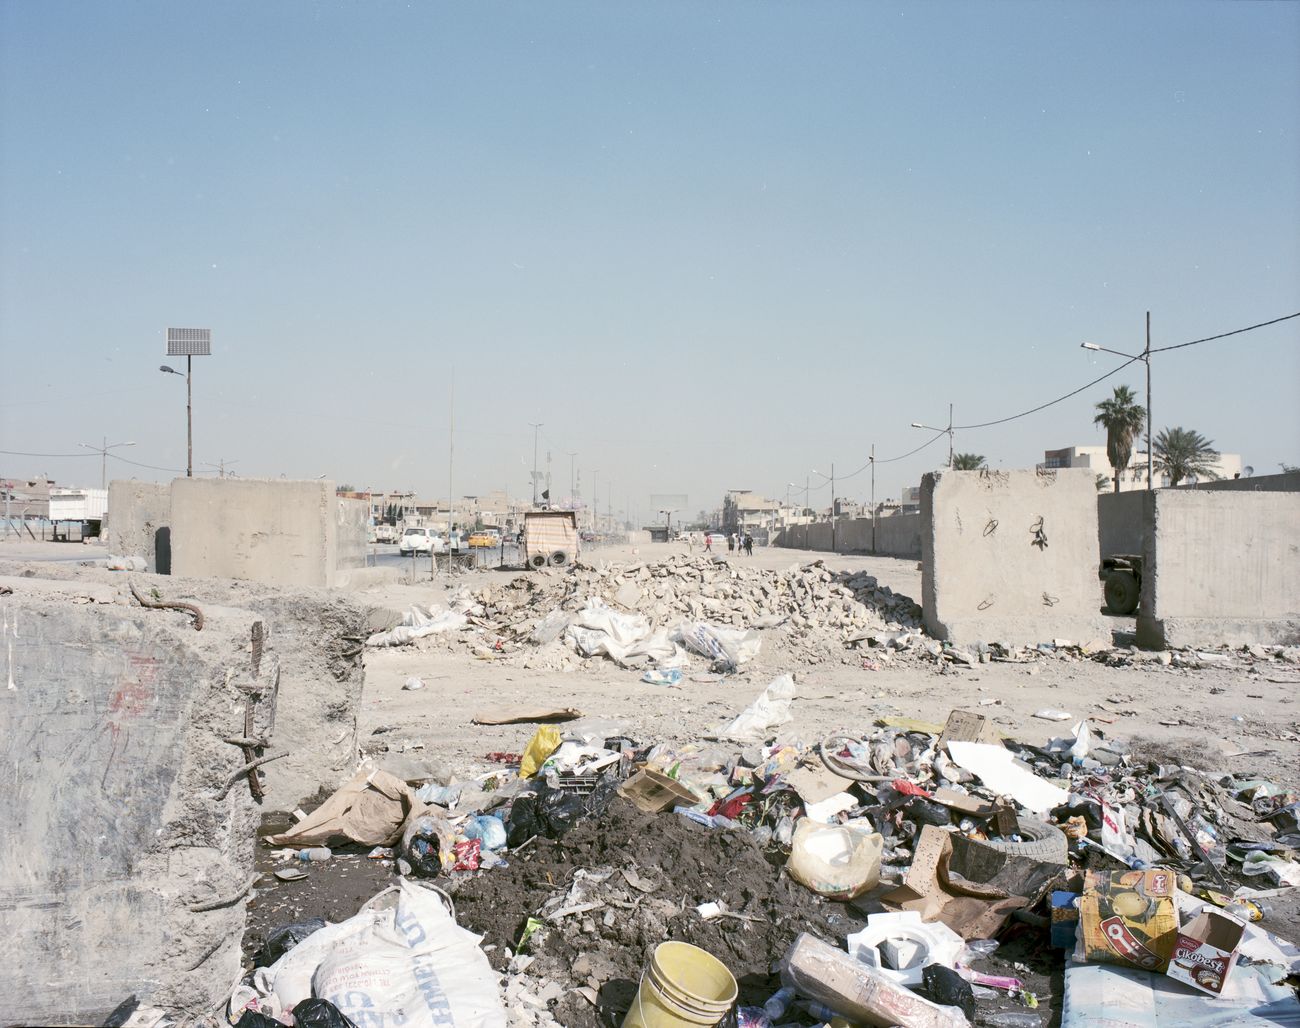 Antonio Ottomanelli, Collateral Landscape – Baghdad, Sadr City, 2011-13